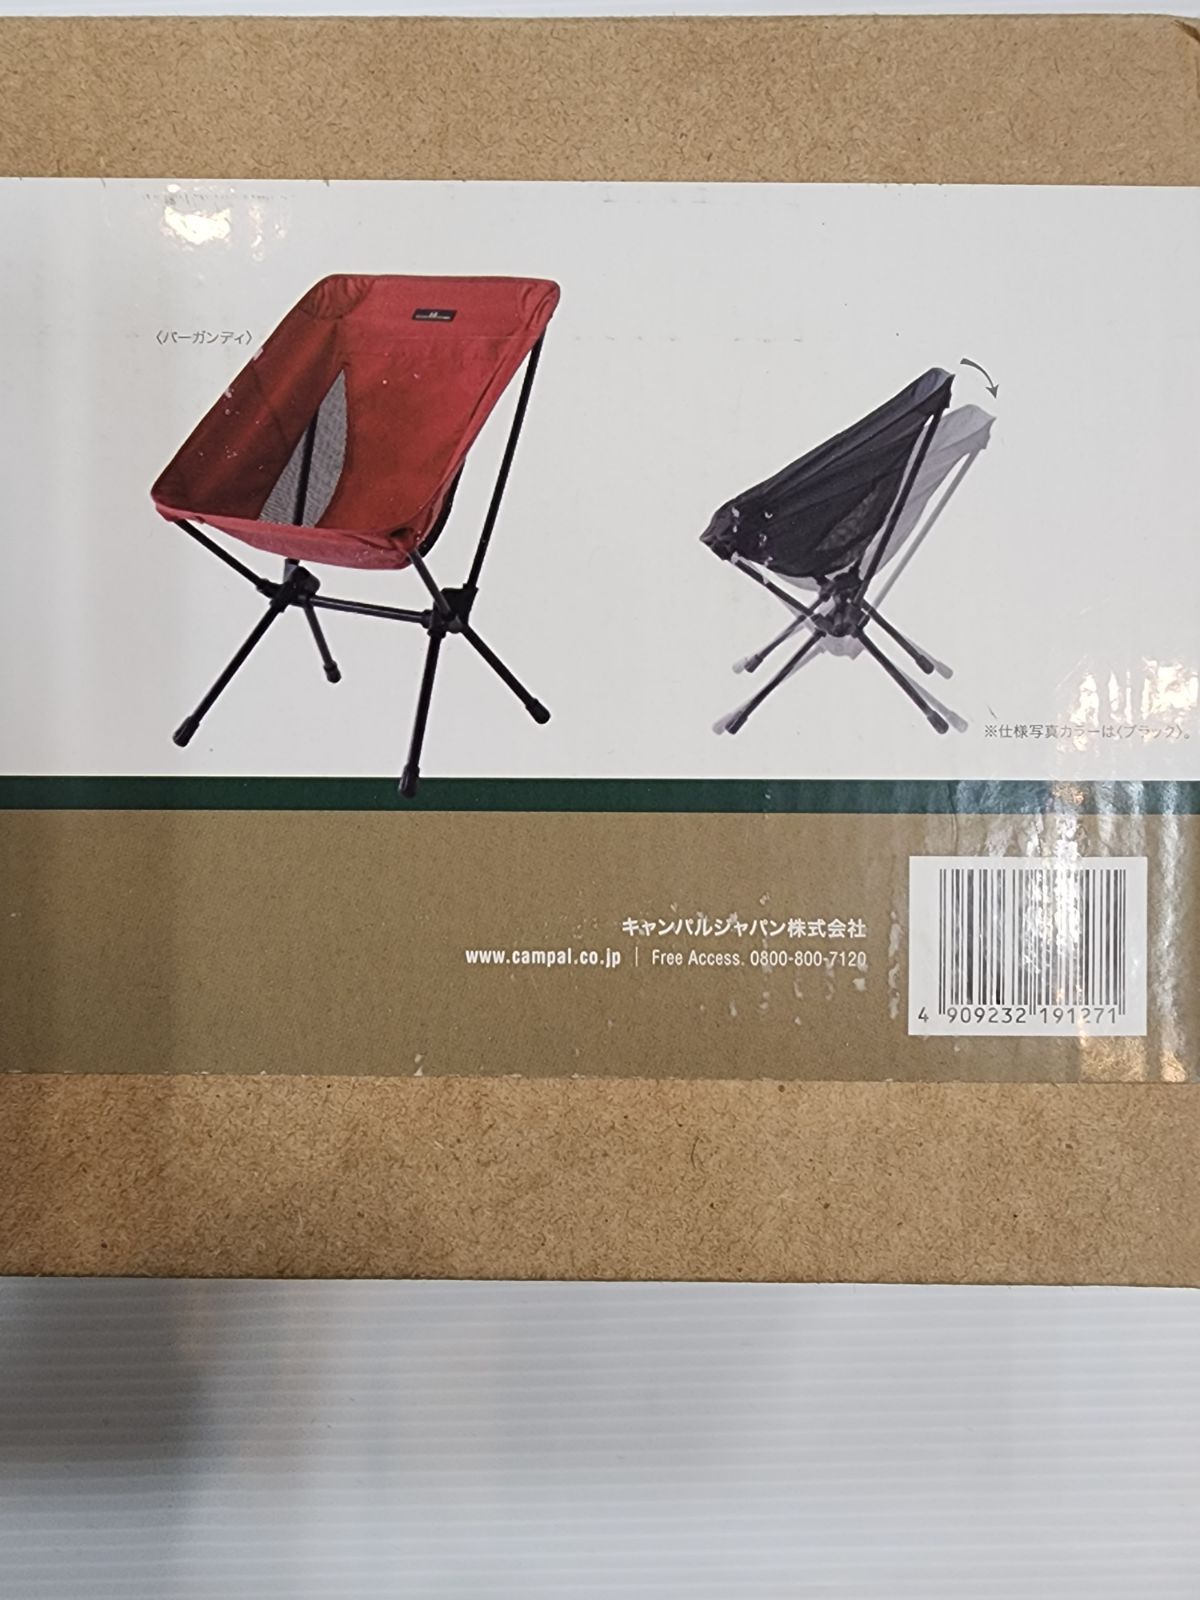 熱販売 オガワ ogawa ツーアングルチェアS キャンプ用品 ファミリーチェア 椅子 バーガンディ 1912